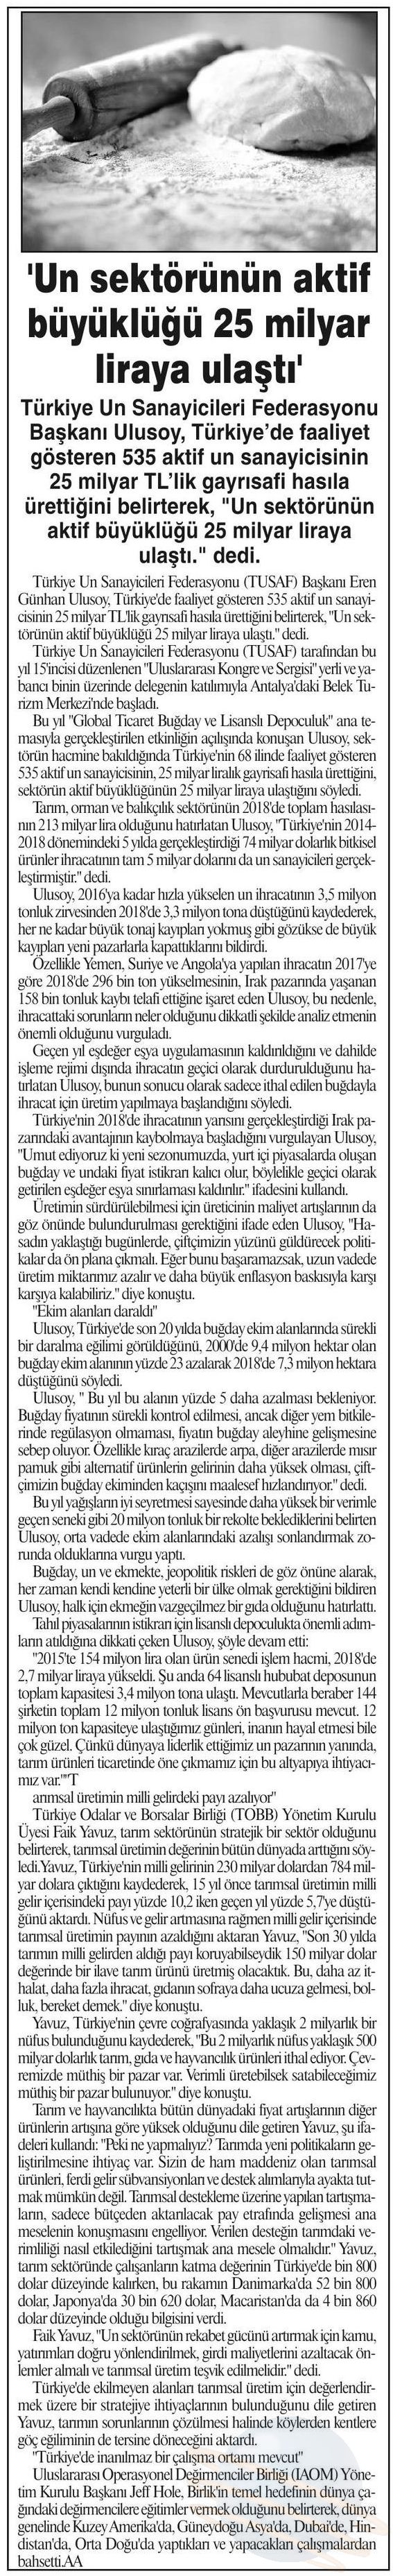 TUSAF Kırklareli Gazetesi 29.04.2019.jpg